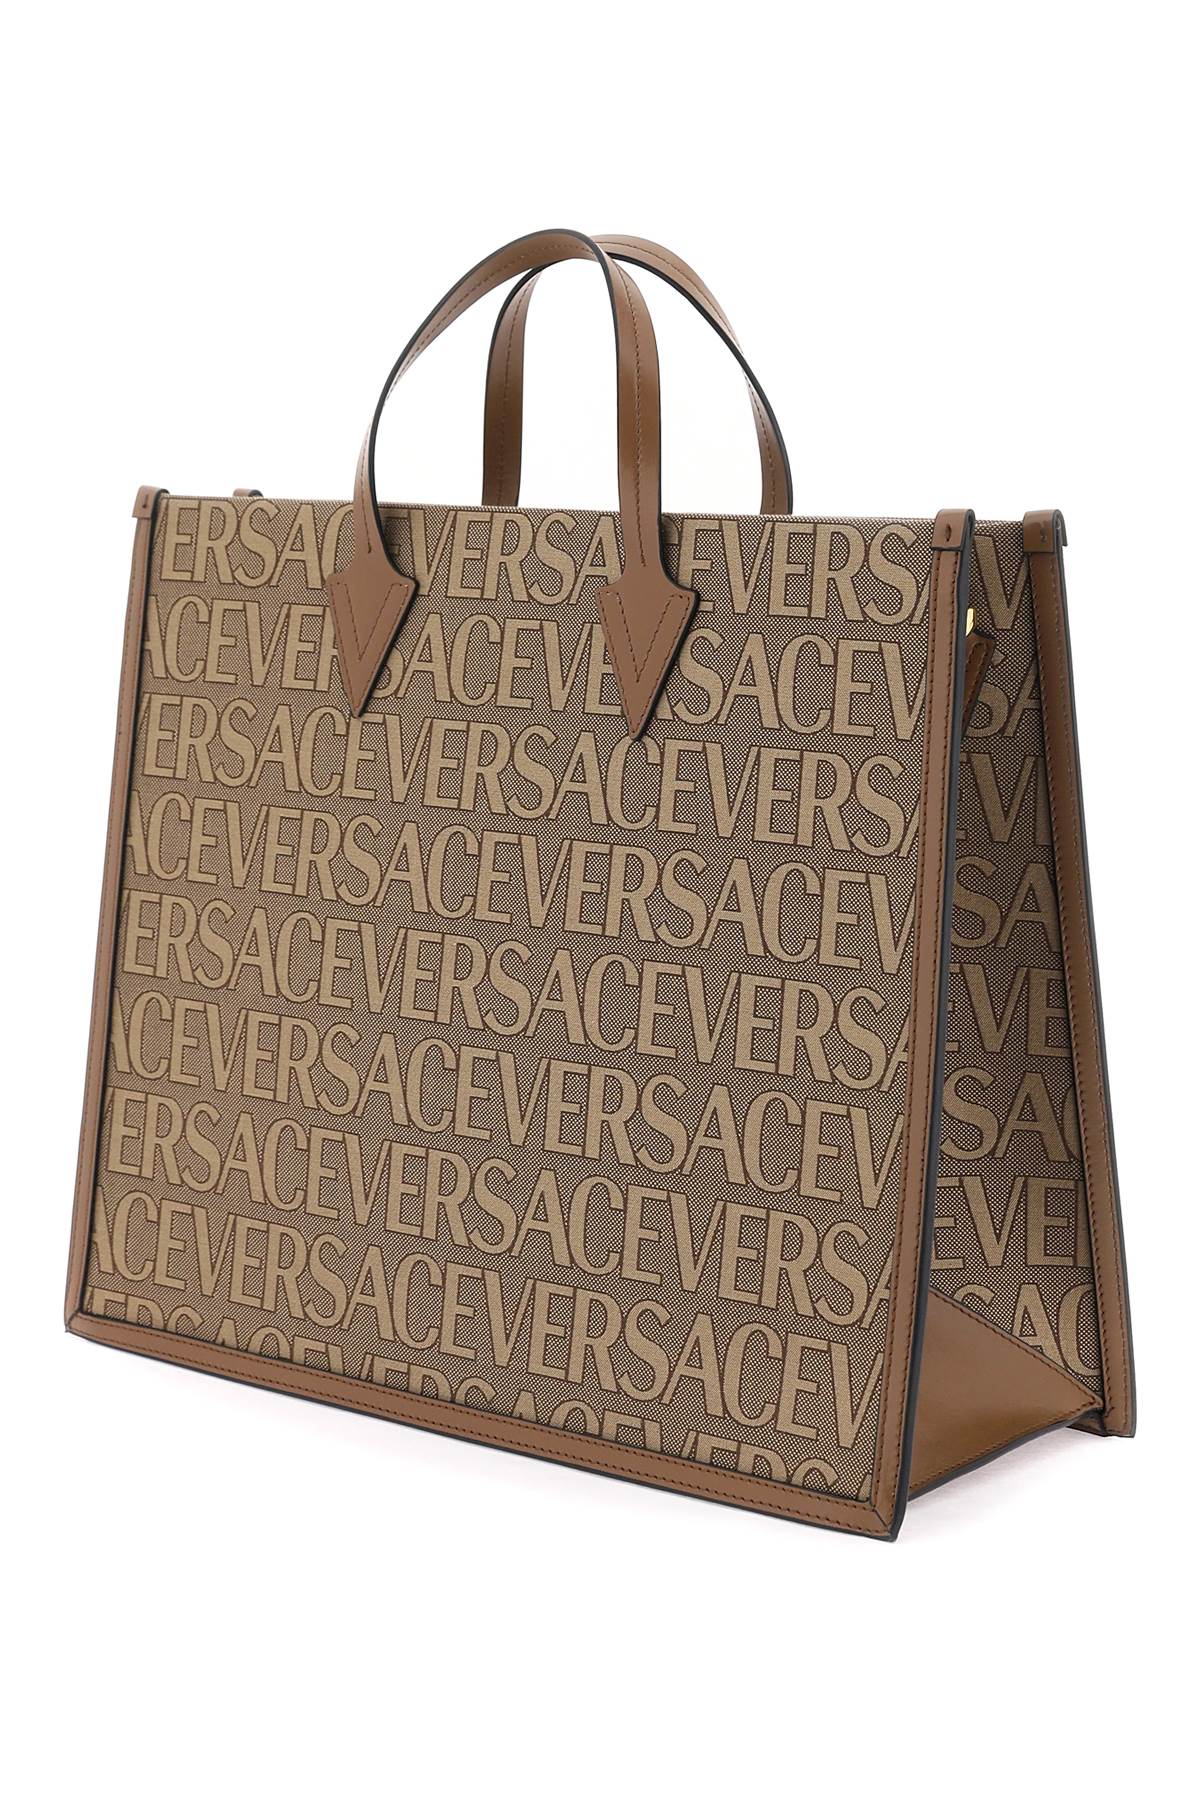 Versace versace allover shopper bag-1